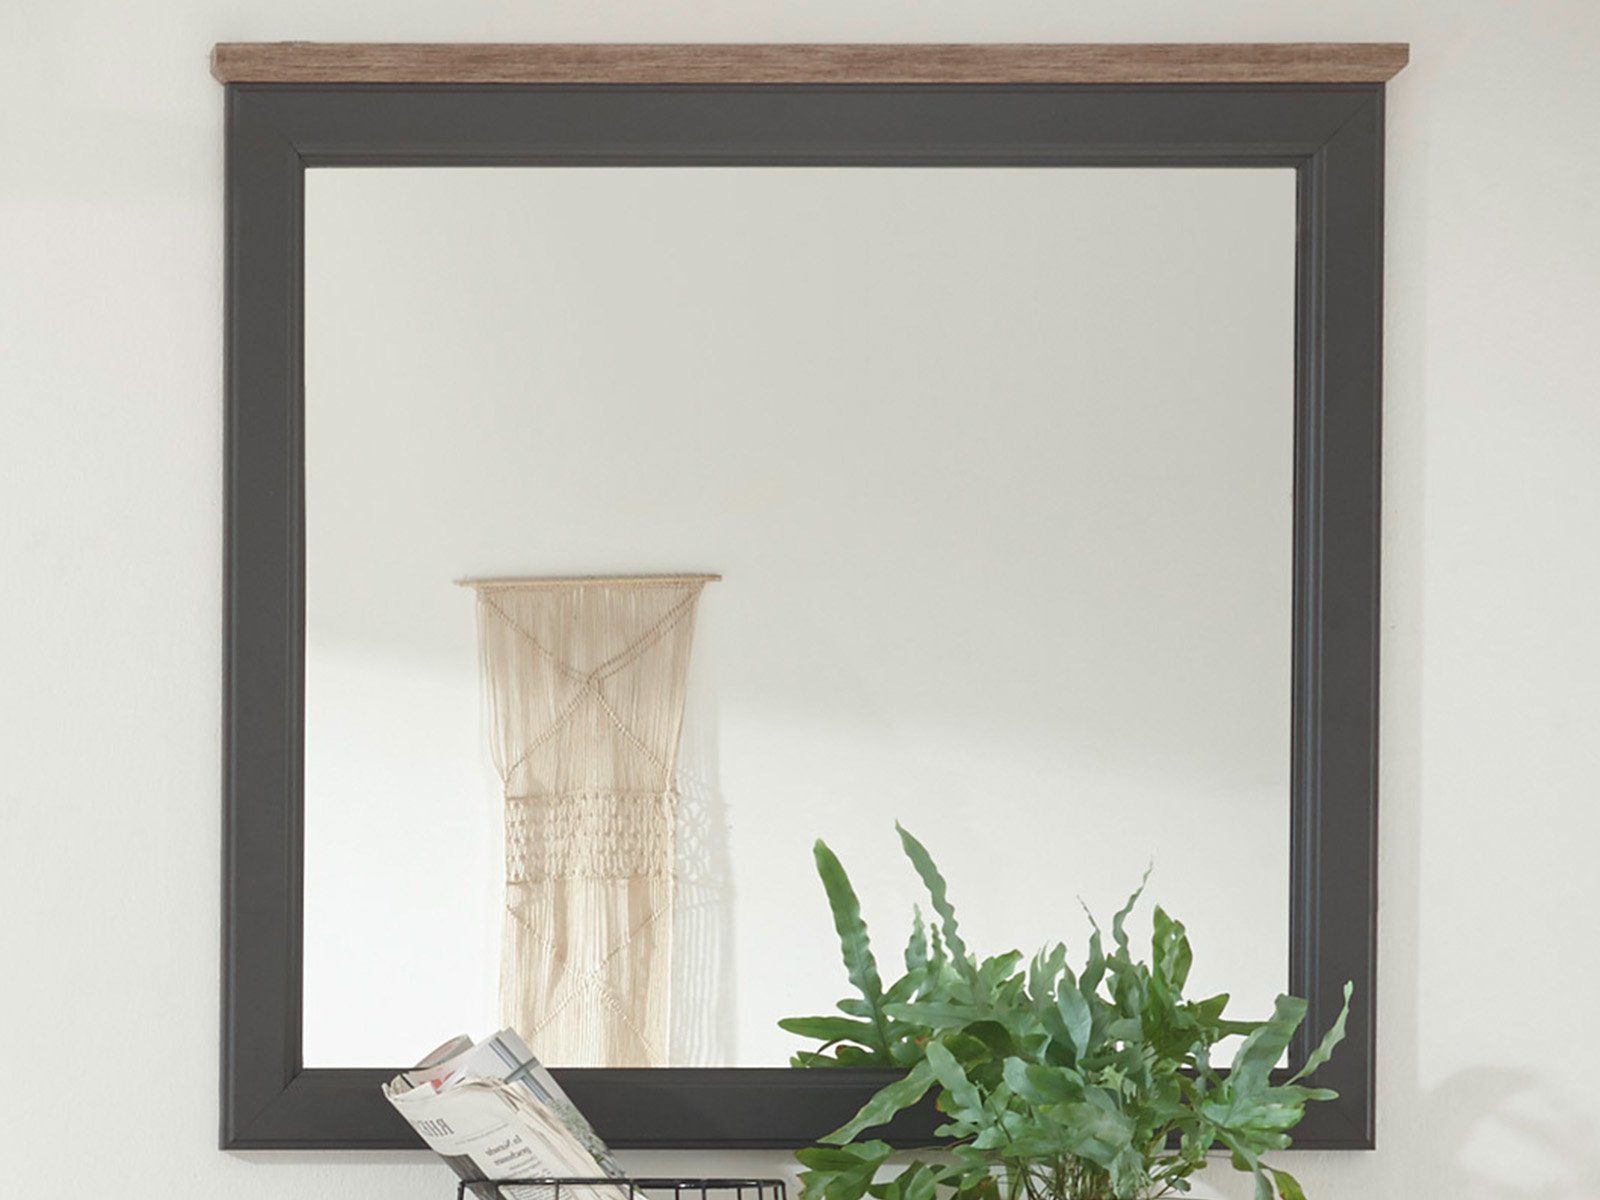 möbelando Wandspiegel Tomlin, Spiegel im modernen Landhausstil aus Spanplatte in Grau, Oberboden in Timber Wood Nachbildung. Breite 98 cm, Höhe 91 cm, Tiefe 3,5 cm